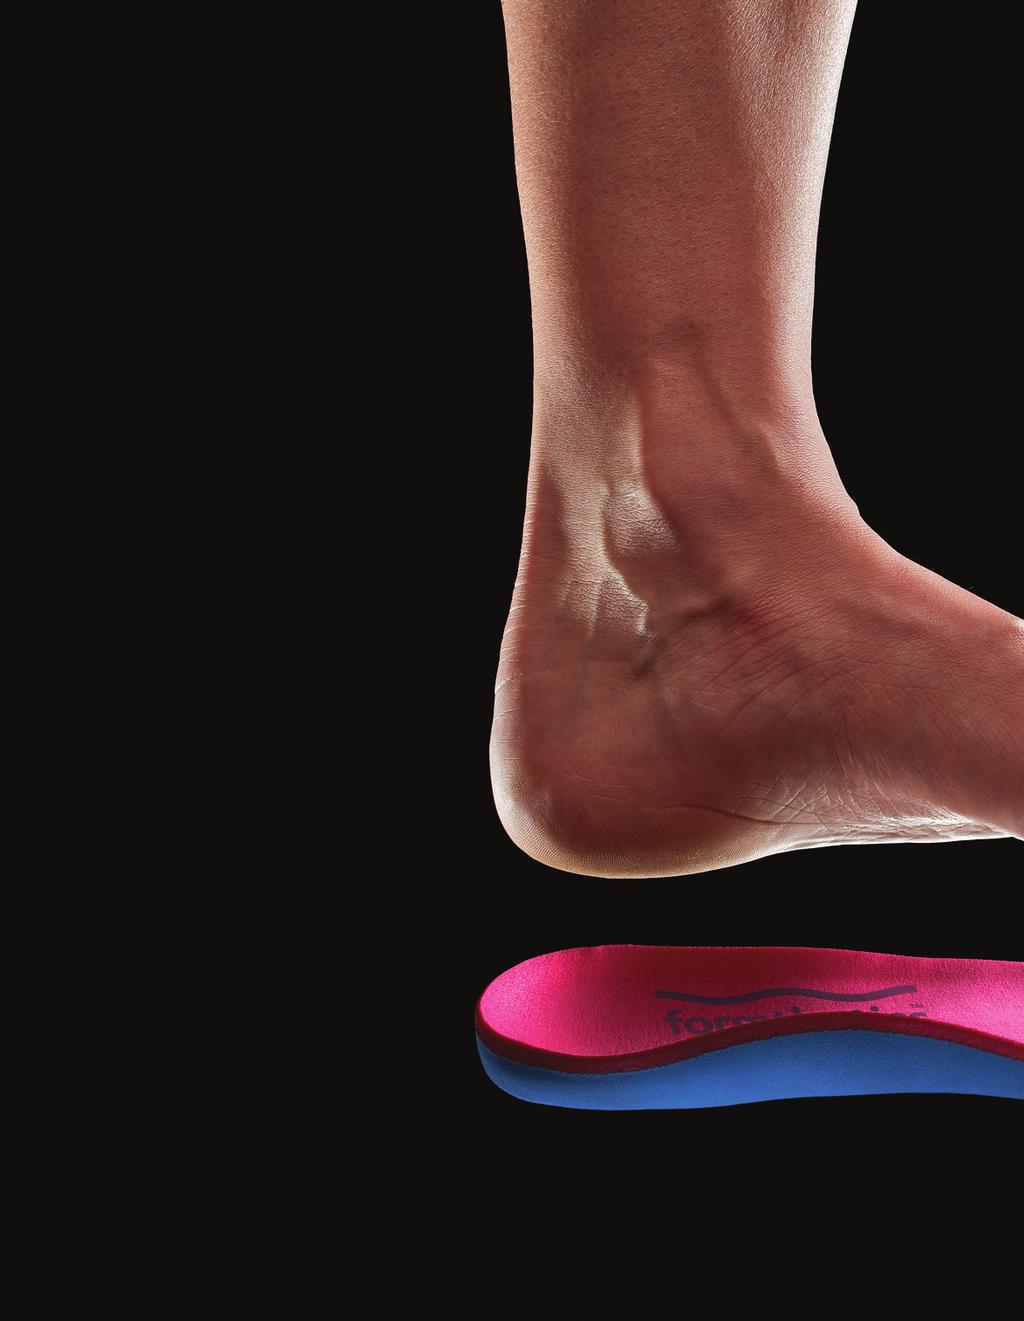 Formthotics Sport - Die Technologie Formthotics Sport Fußbetten werden seit 35 Jahren von Foot Science International in Neuseeland entwickelt, wissenschaftlich getestet und